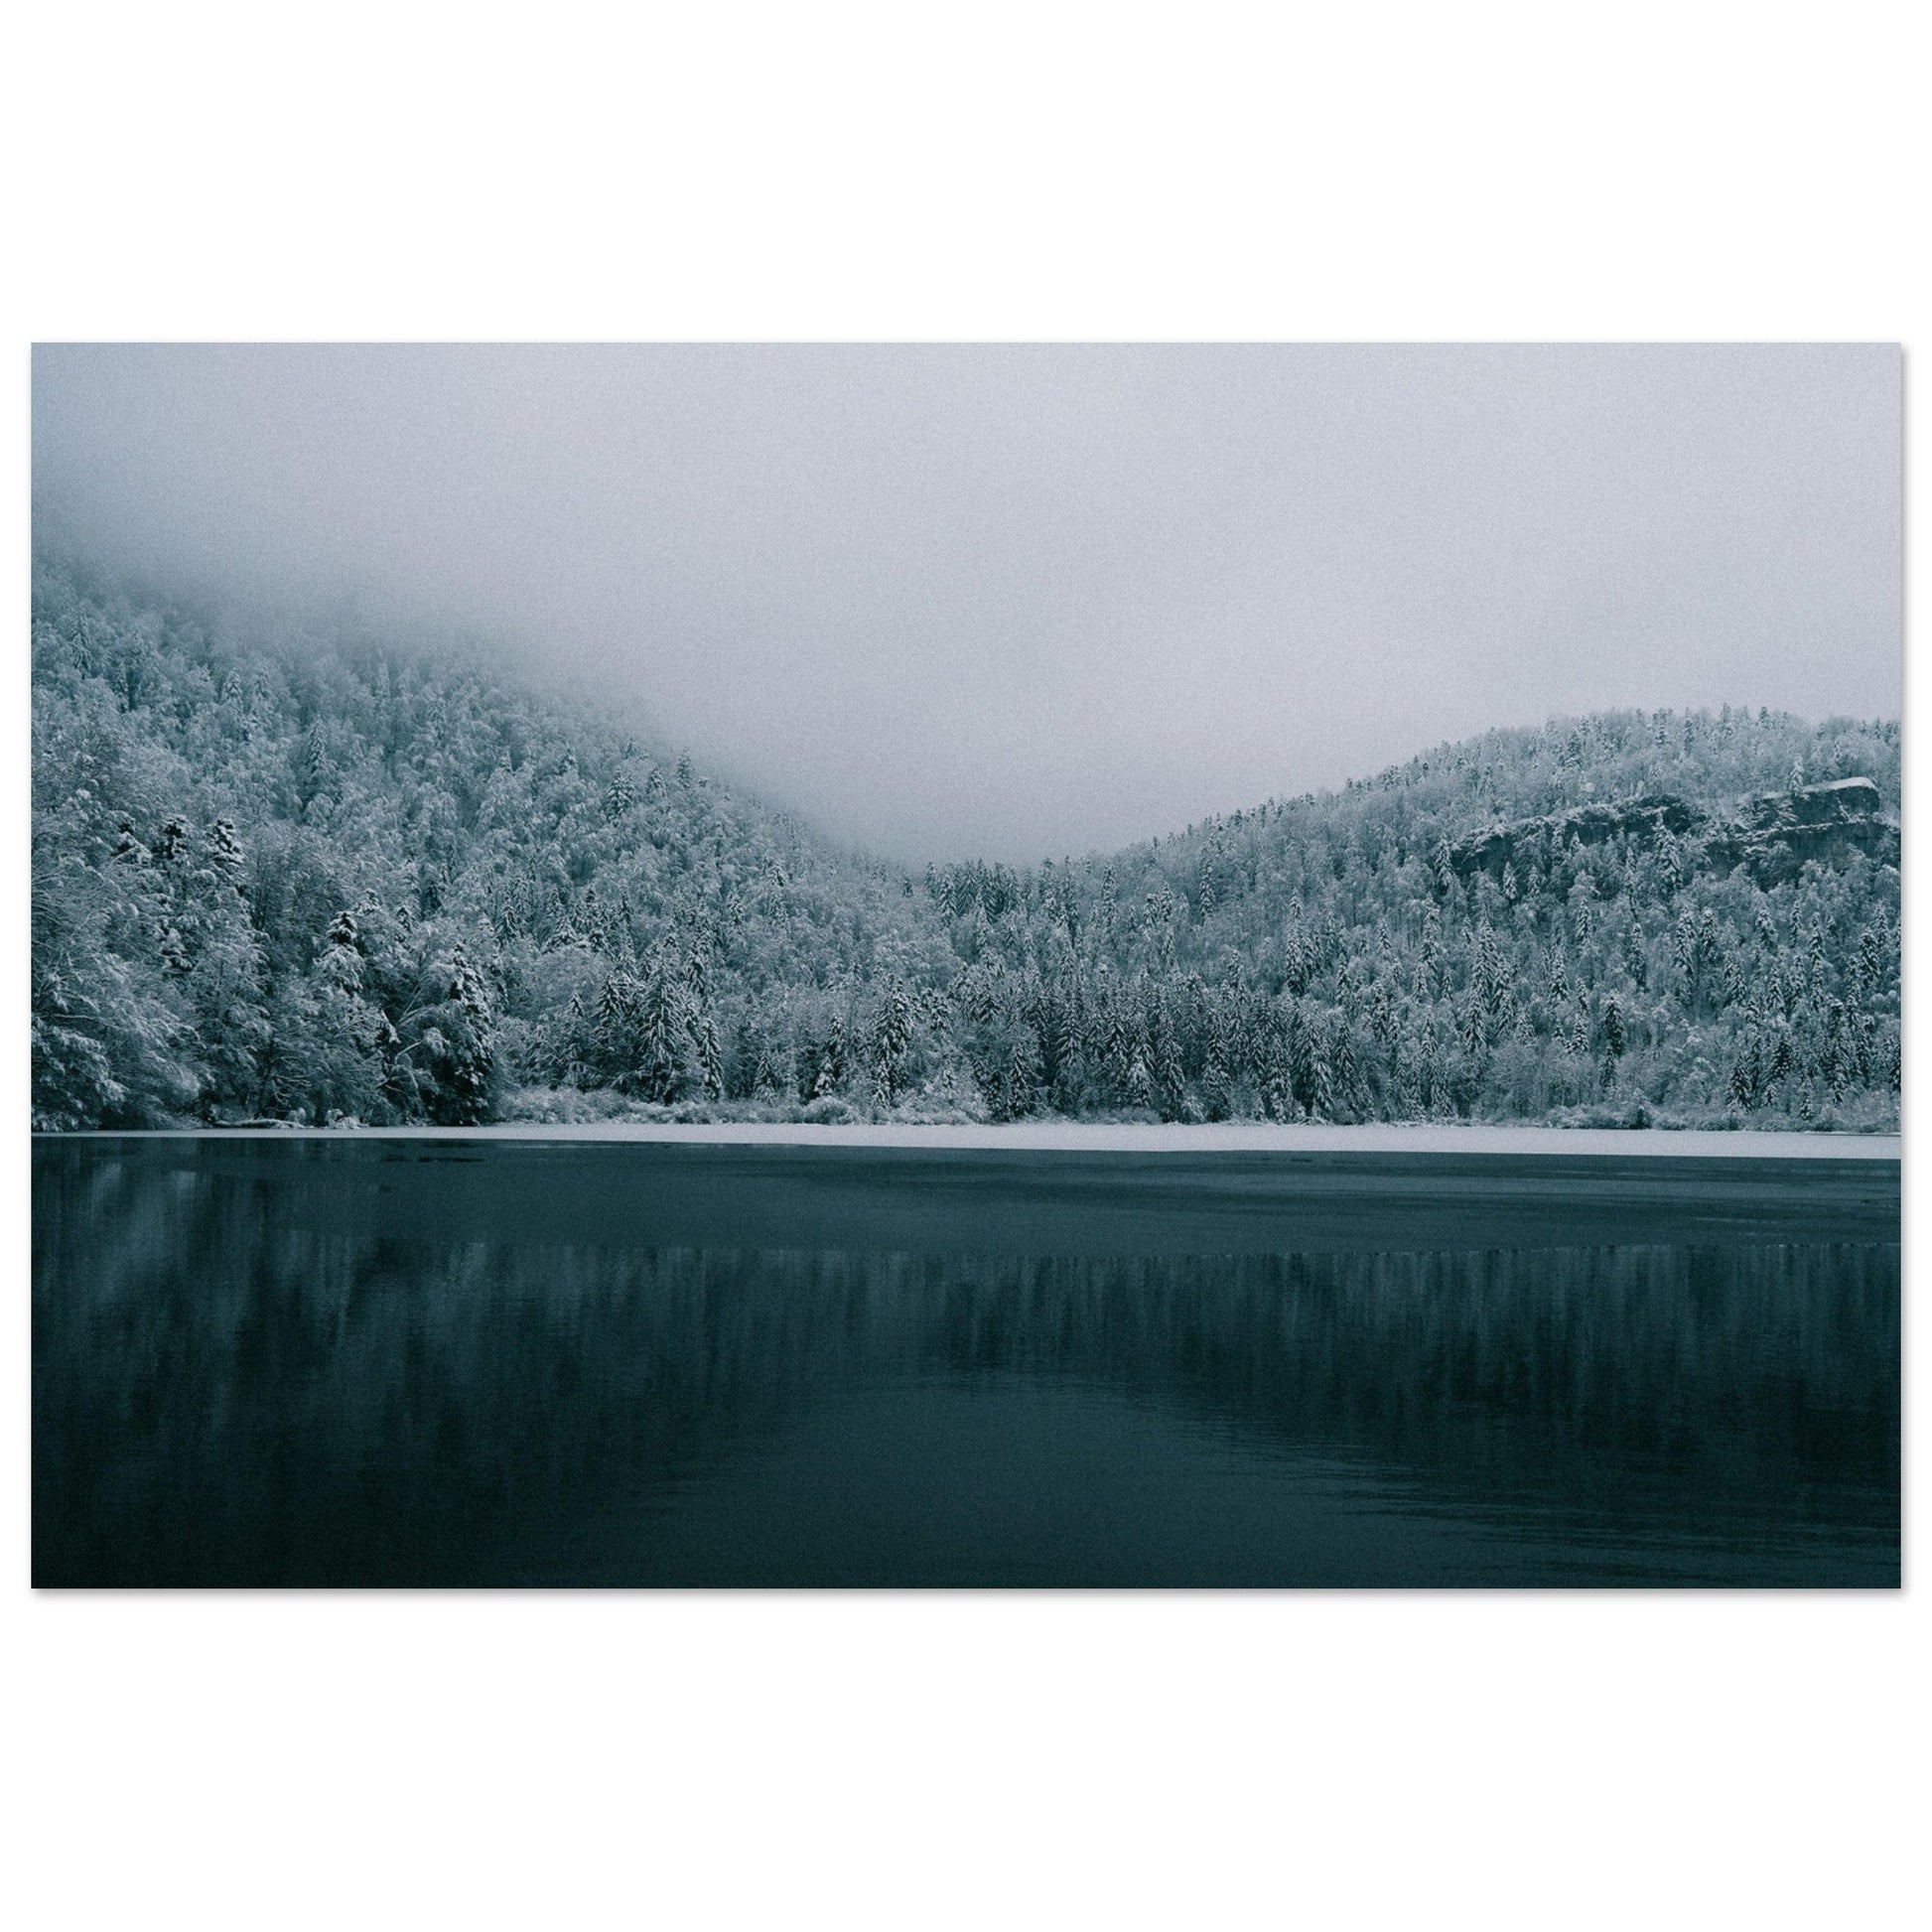 Photo d'un lac et d'une foret enneigée en hiver, Jura #1 - Tableau photo alu montagne